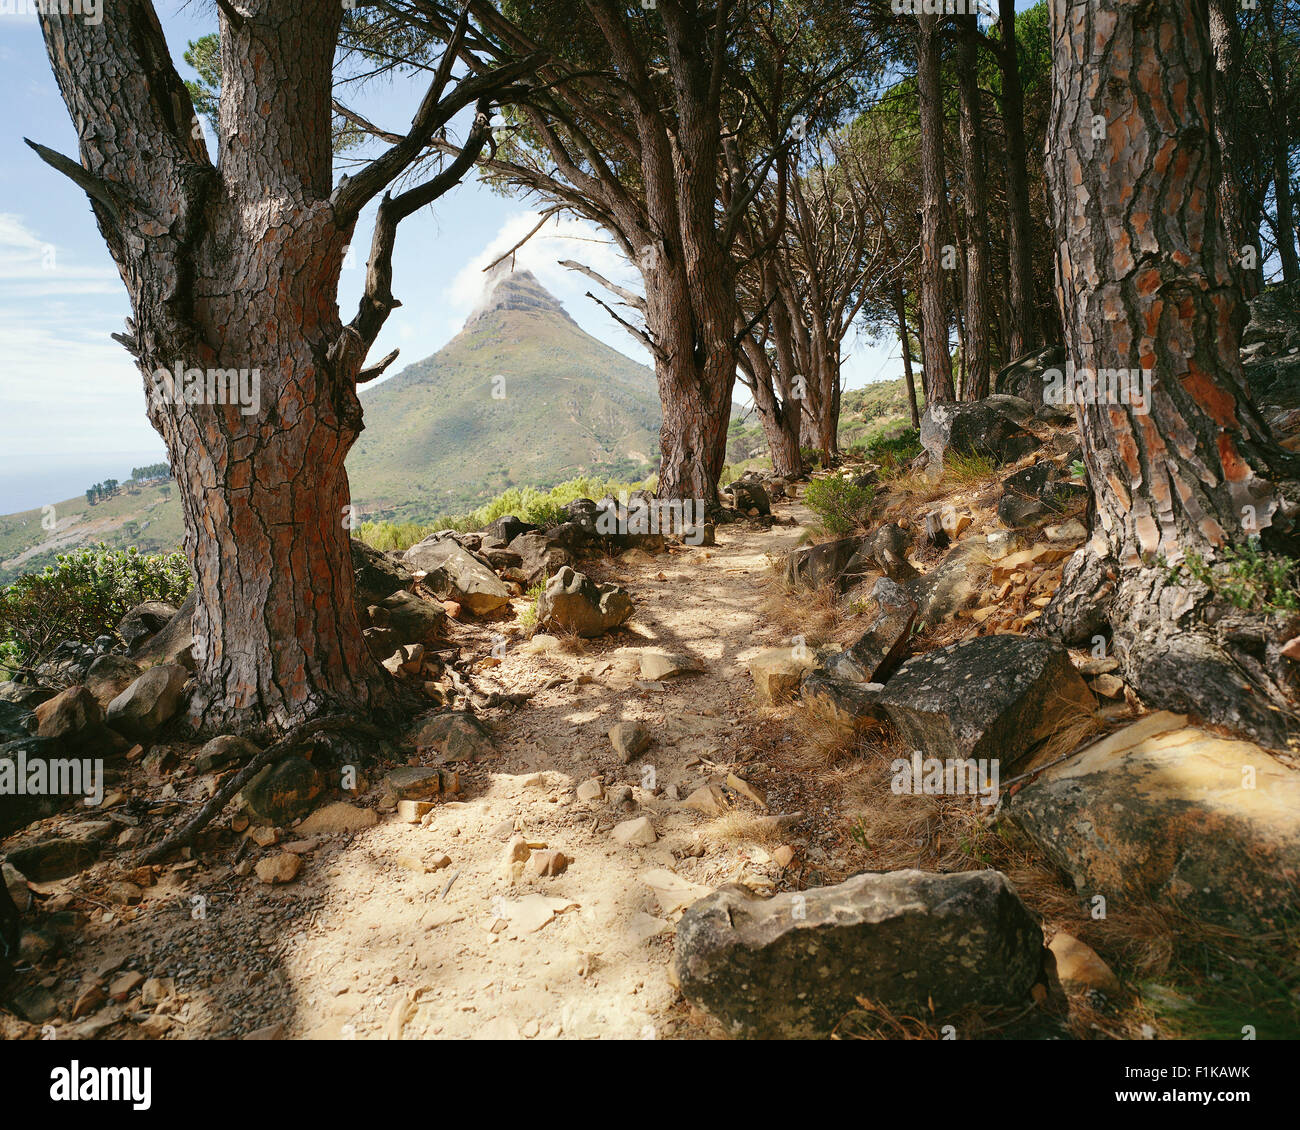 Percorso nella Foresta, vertice della testa di leone in background, Cape Town, Western Cape, Sud Africa Foto Stock